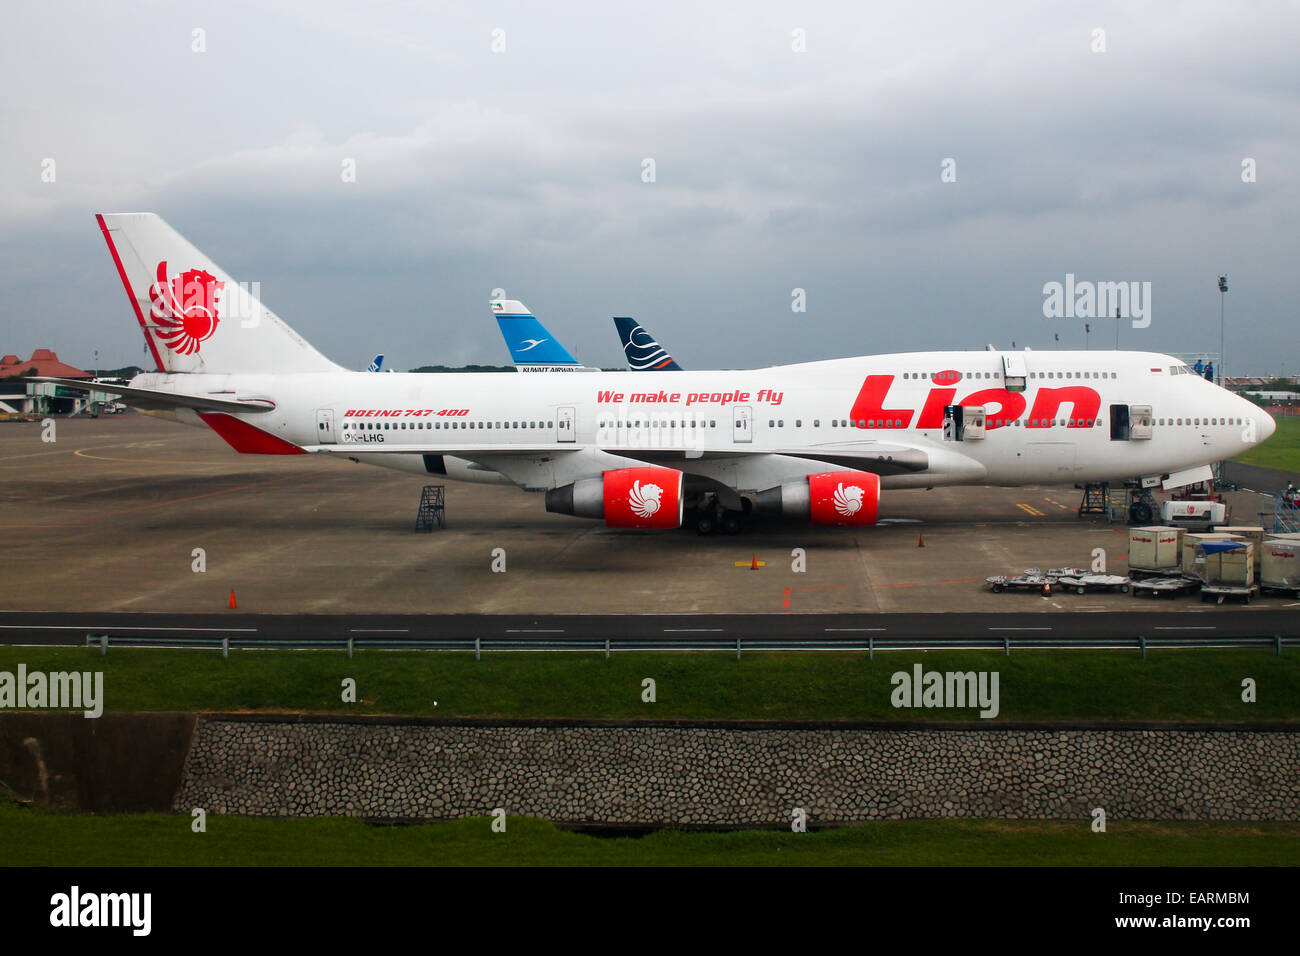 Lion Air Boeing 747-400 attend le prochain pèlerinage à La Mecque. Banque D'Images